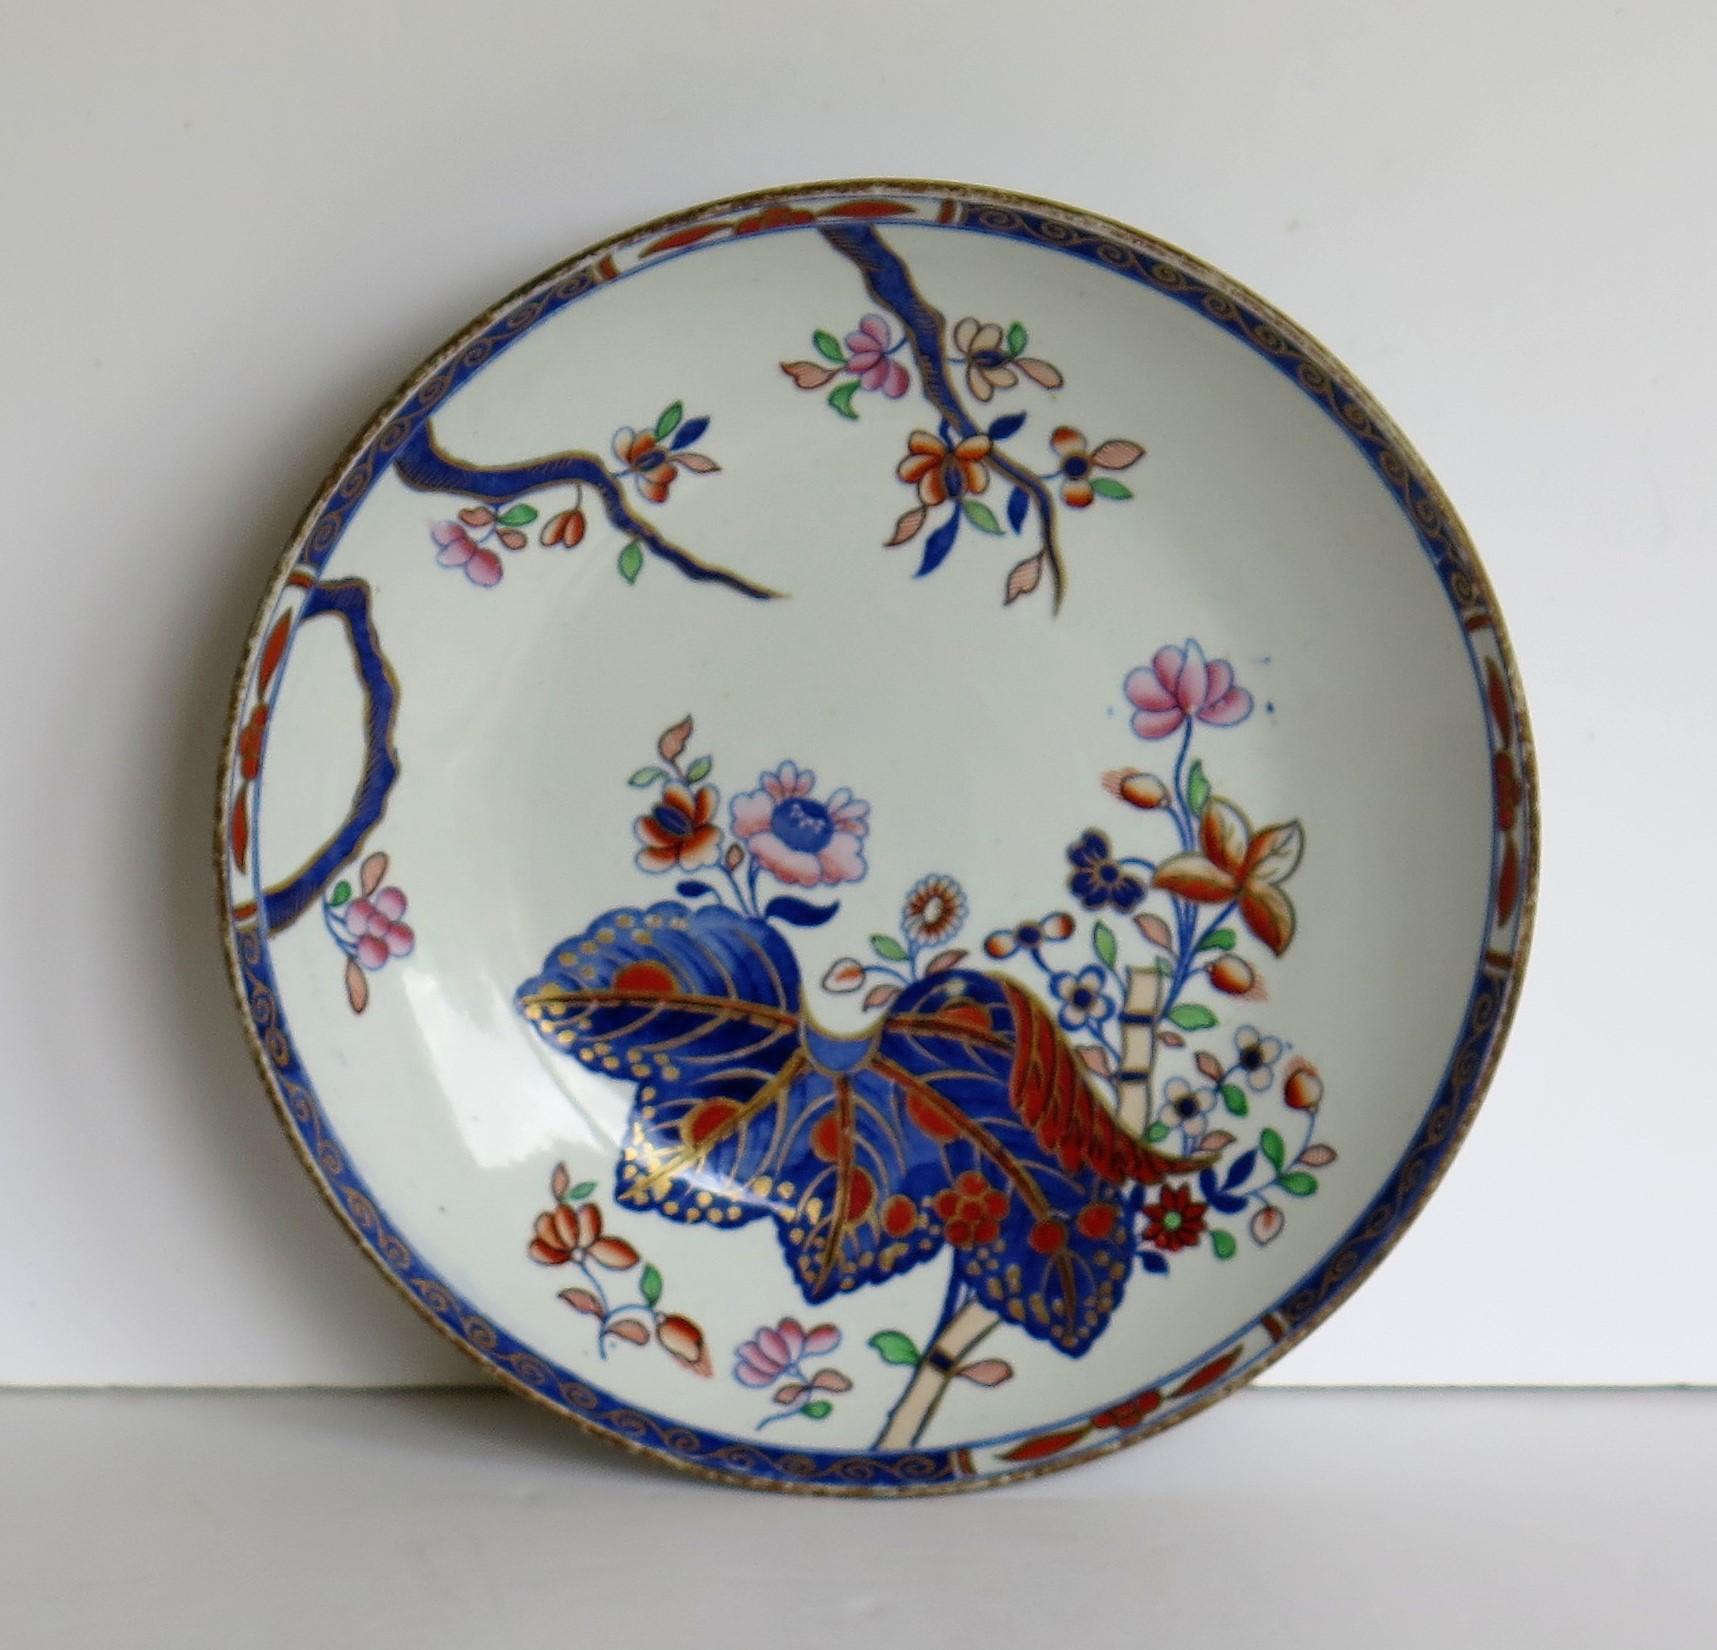 leaf pattern on porcelain